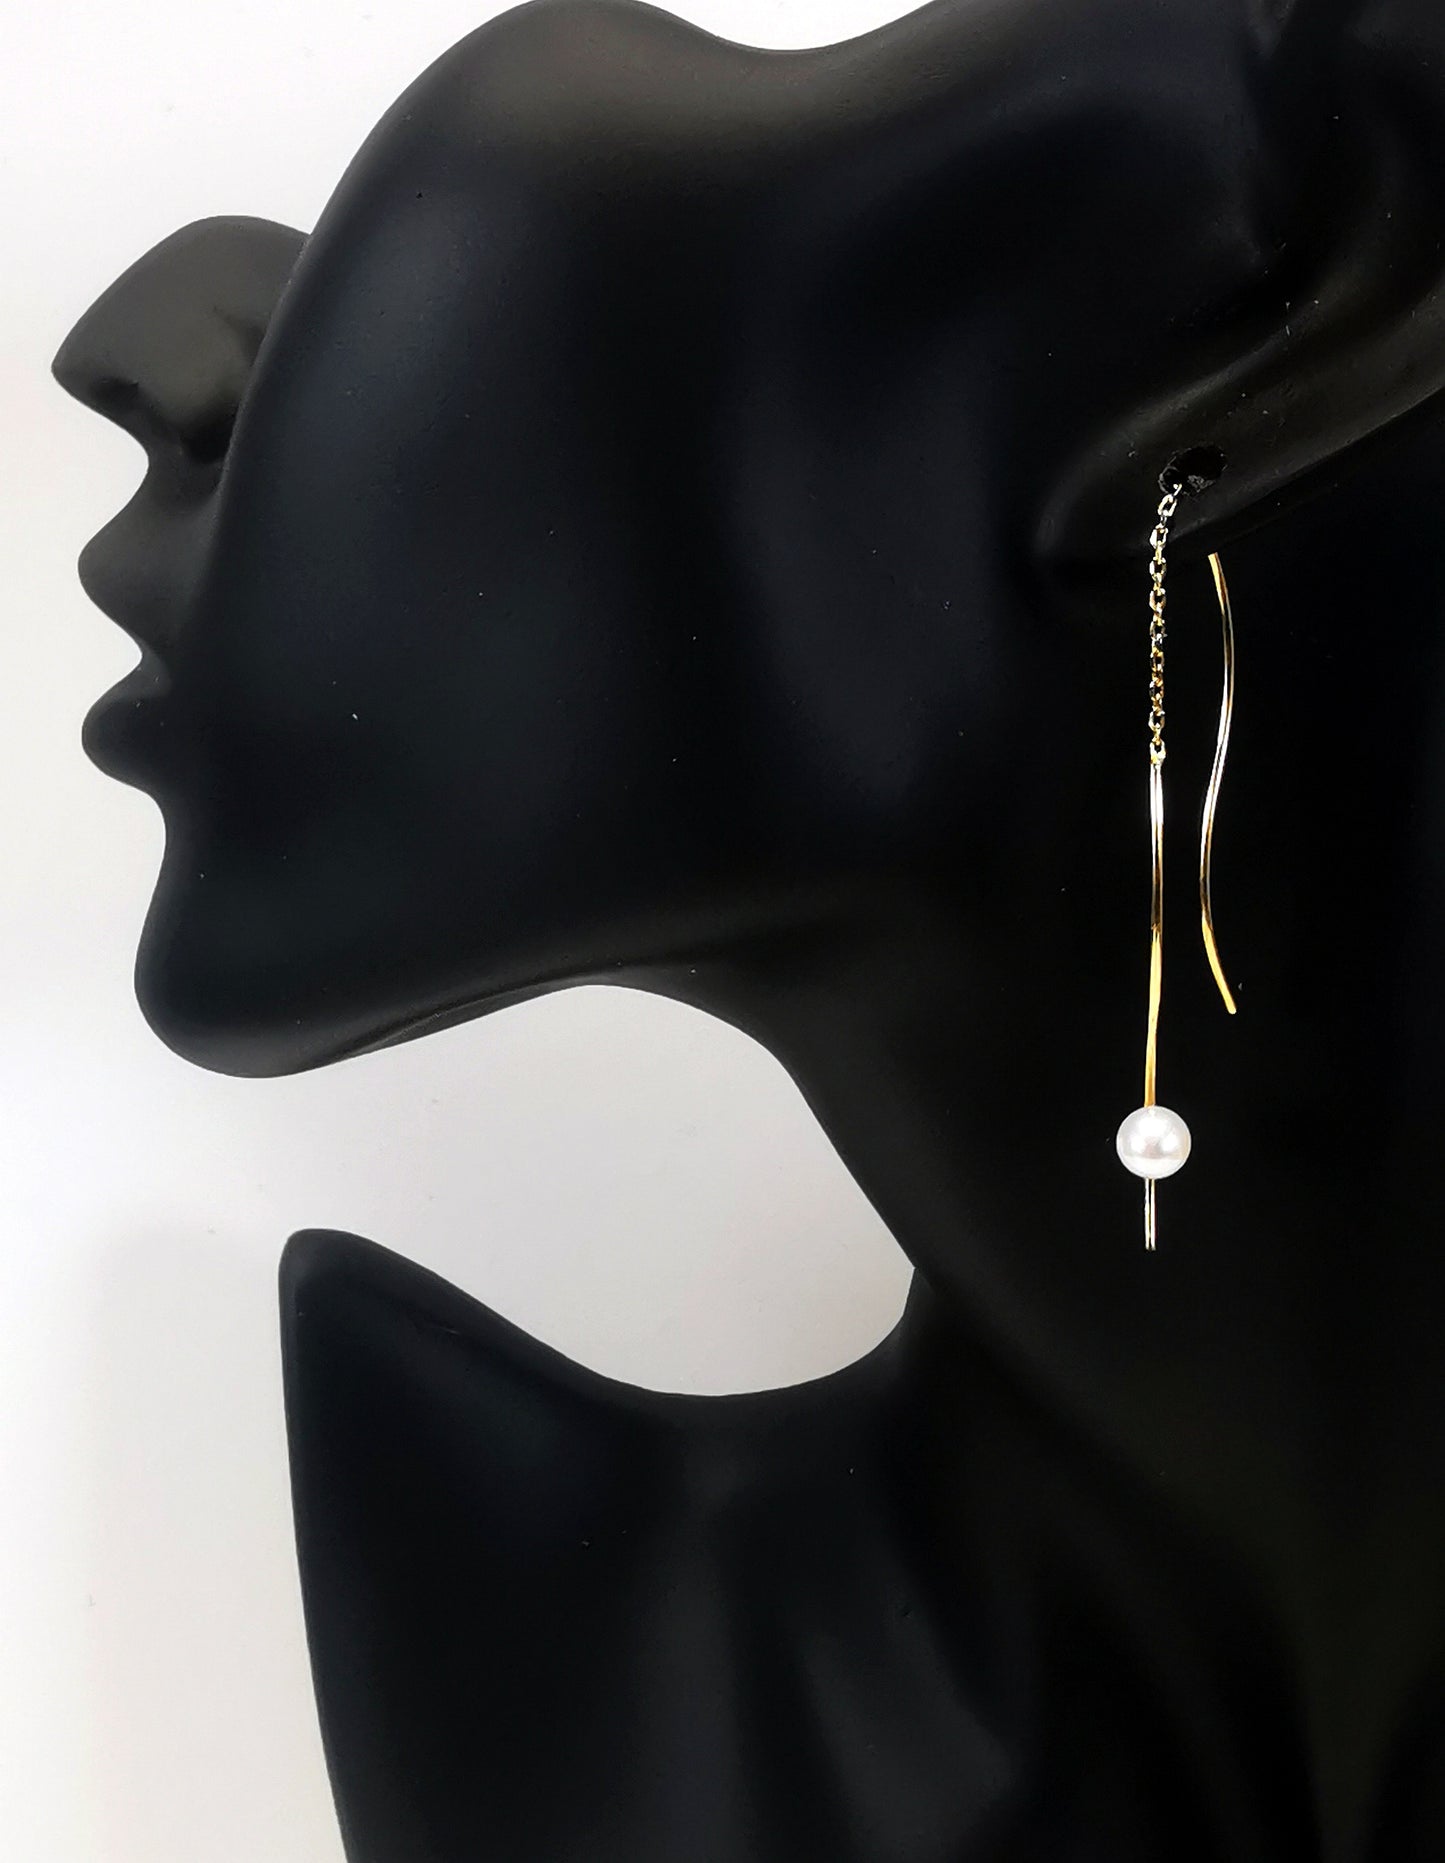 Boucles d'oreilles perles de culture blanches rondes 5mm sur pendants plaqués or. Les pendants sont constitués de deux "s" longs de 45mm reliés par 15mm de chaine. Sur un des 2 "s", la perle est montée perpendiculairement, à 8mm du bas. Représentées par une boucle montée sur l'oreille d'un mannequin buste noir, le "s" avec la perle devant le lobe et plus basse, l'autre derrière. Vue de coté.